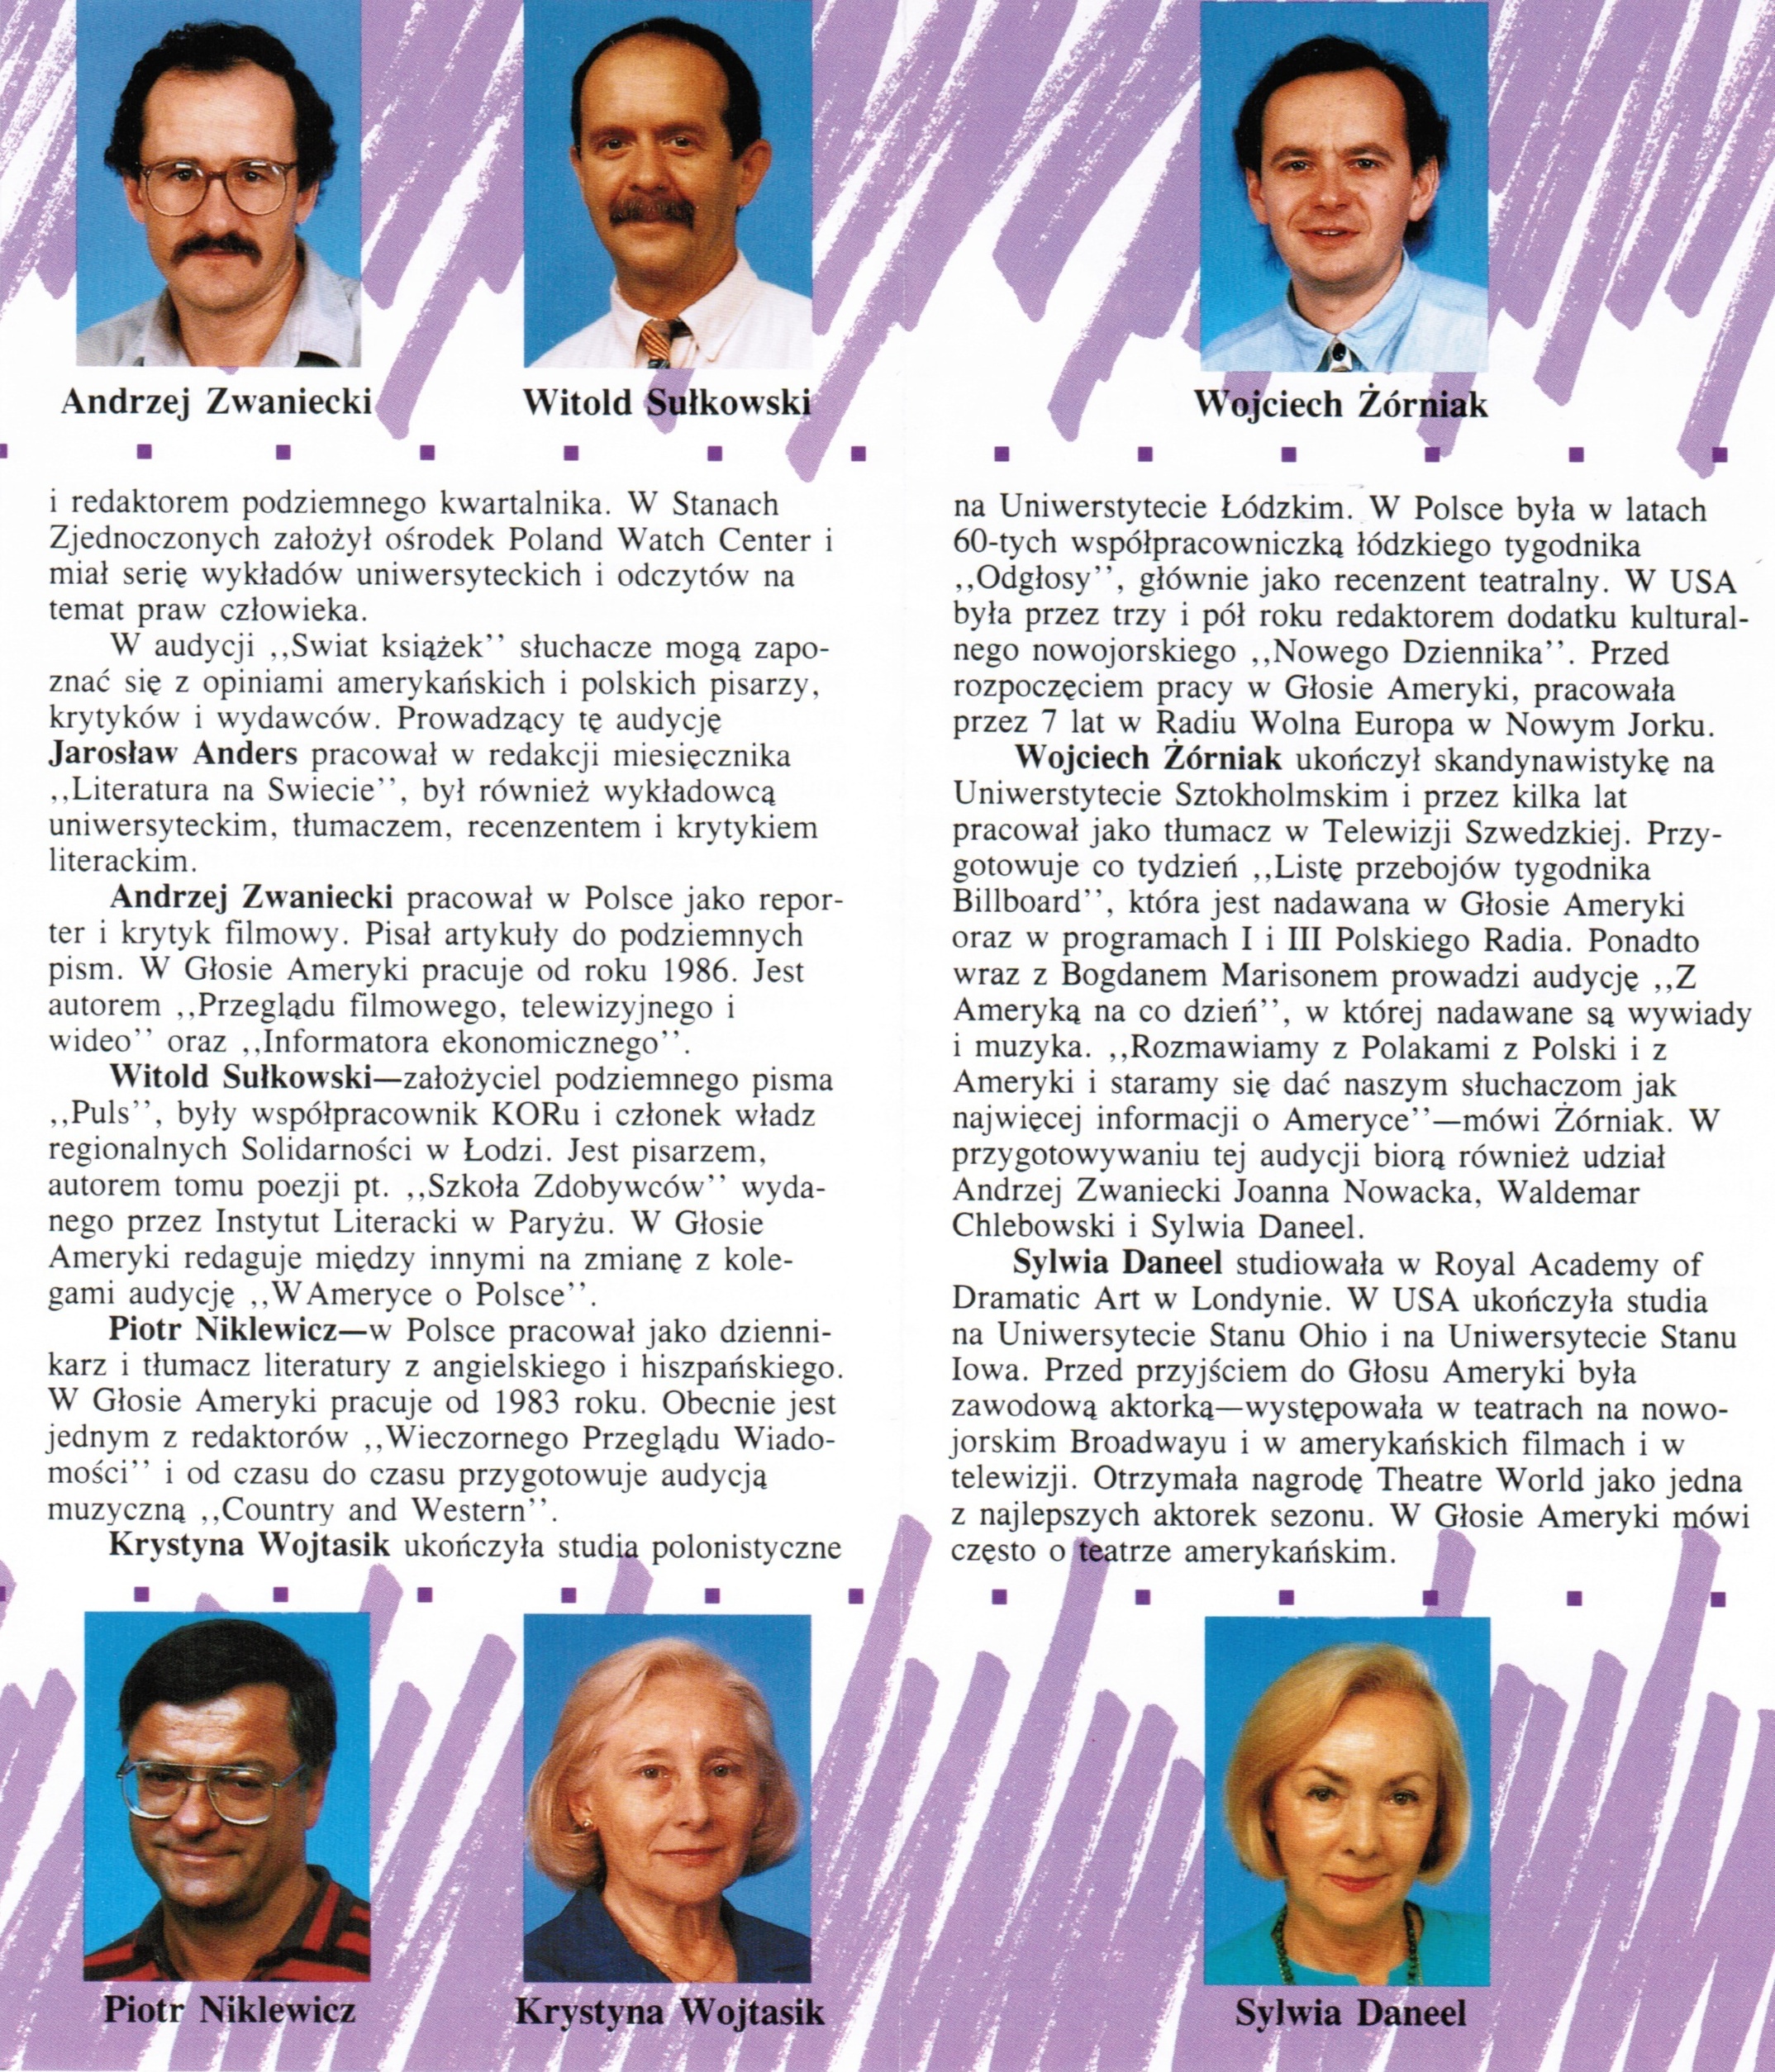 Broszura sekcji polskiej Głosu Ameryki, circa 1990.